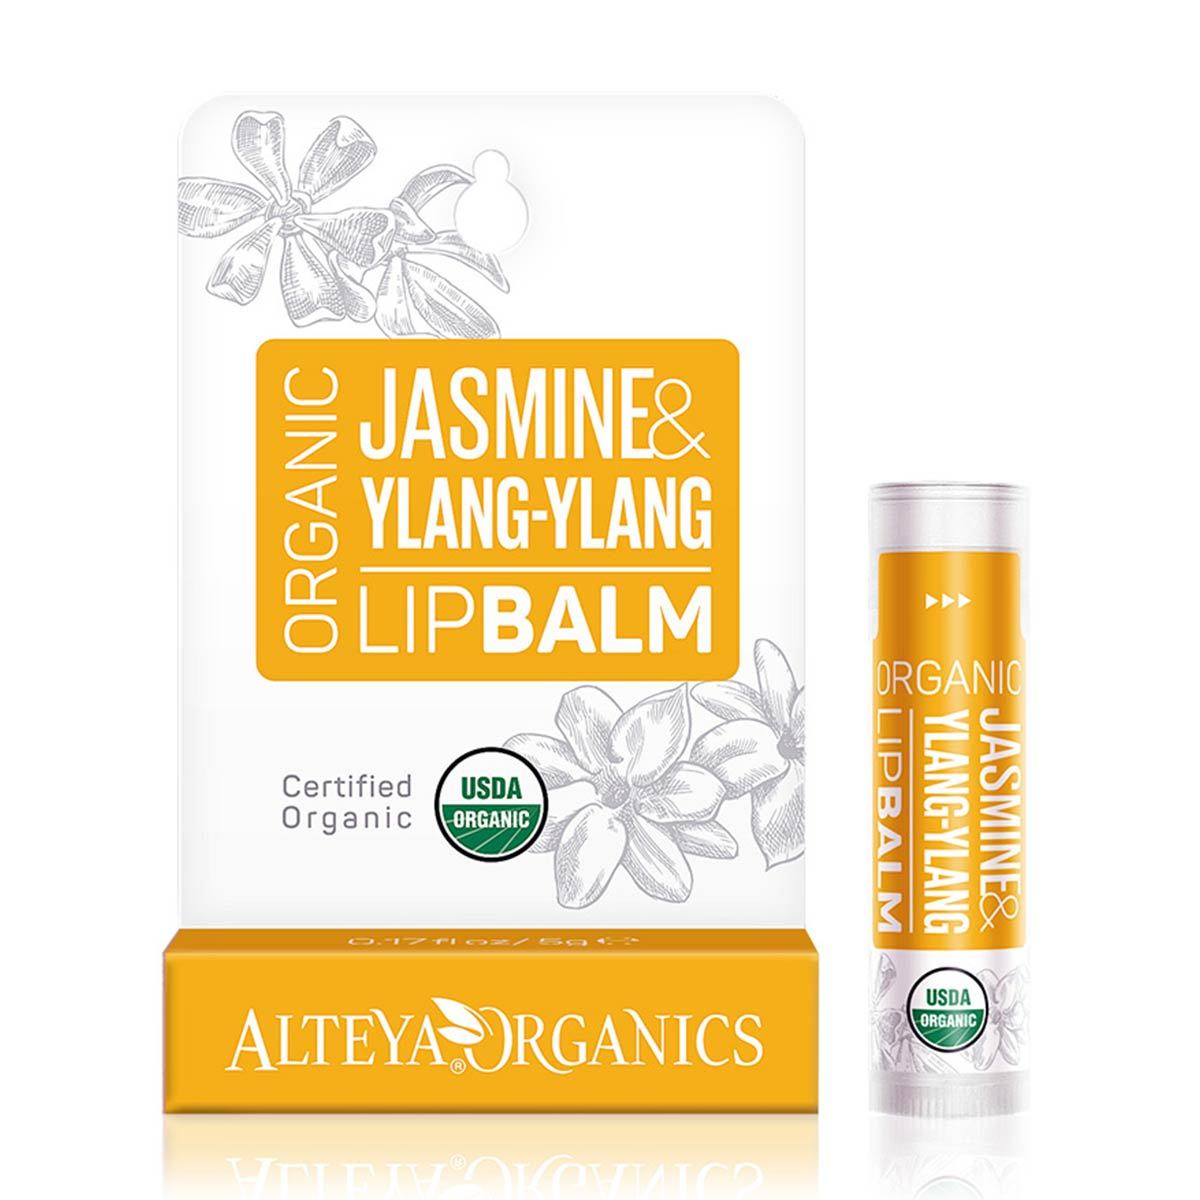 Primary image of Jasmine Ylang-Ylang Lip Balm